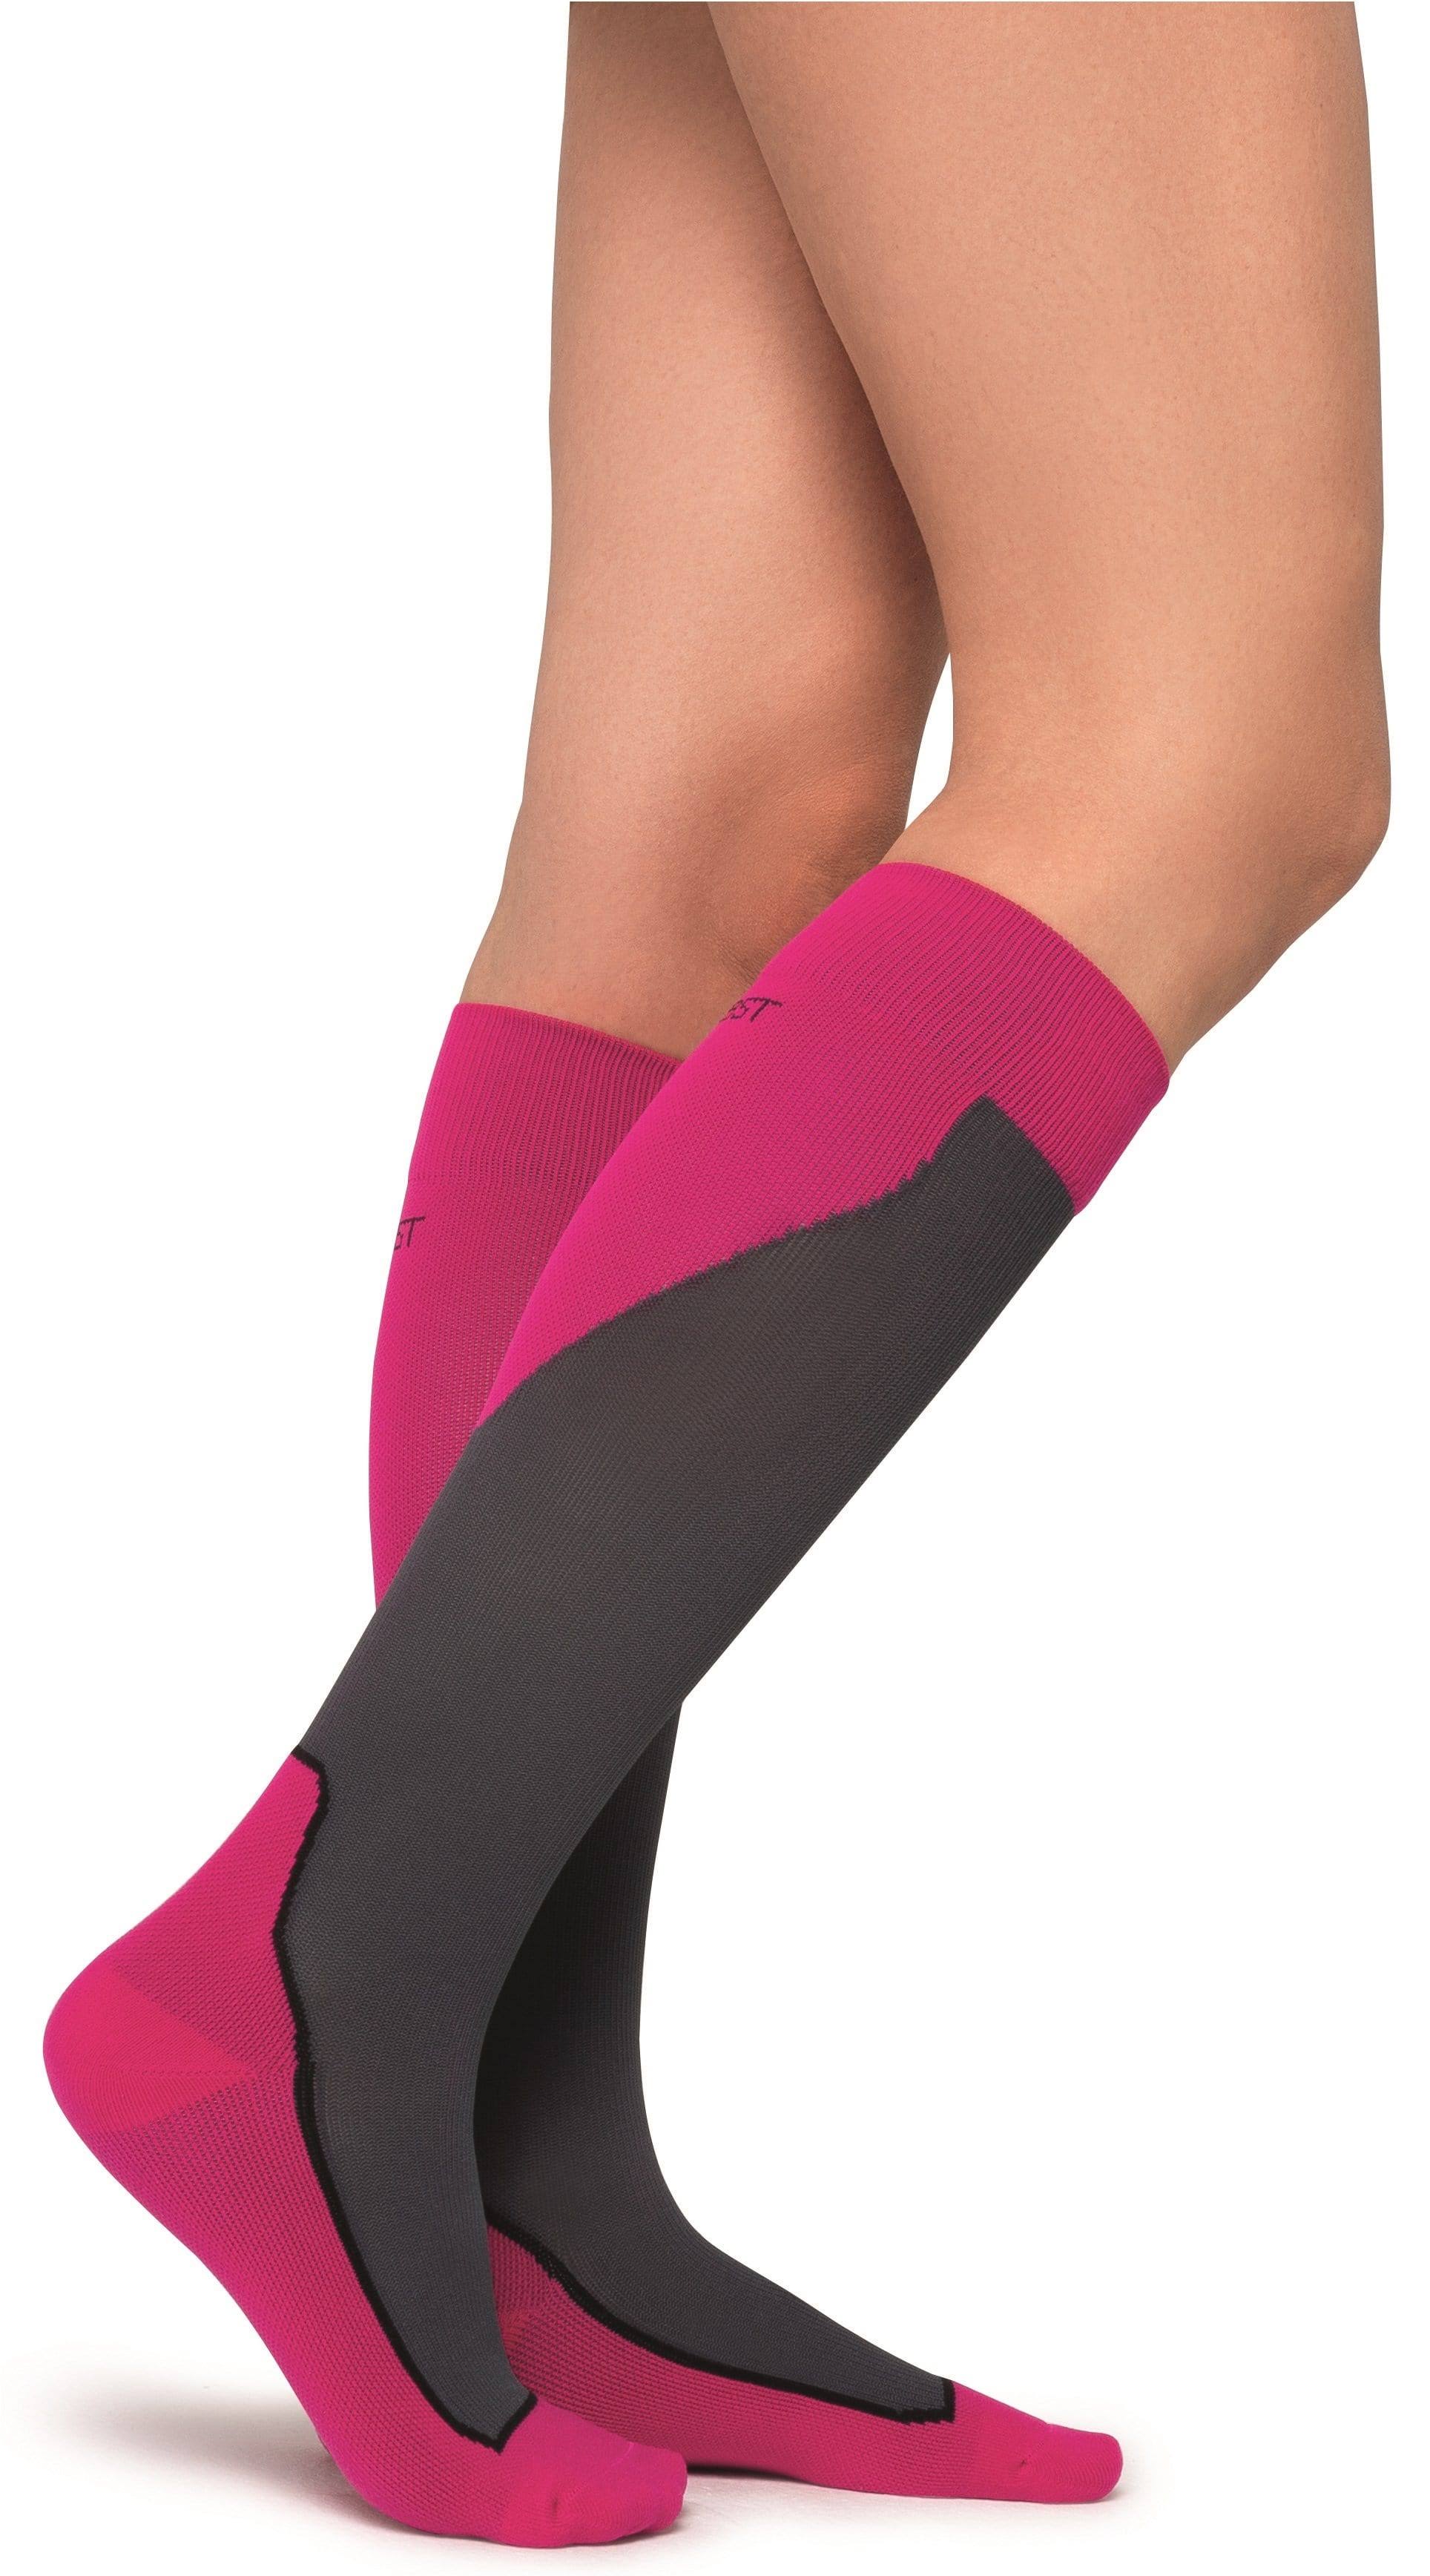 Jobst Sport 20-30 mmHg Knee High Socks / Medium / Pink